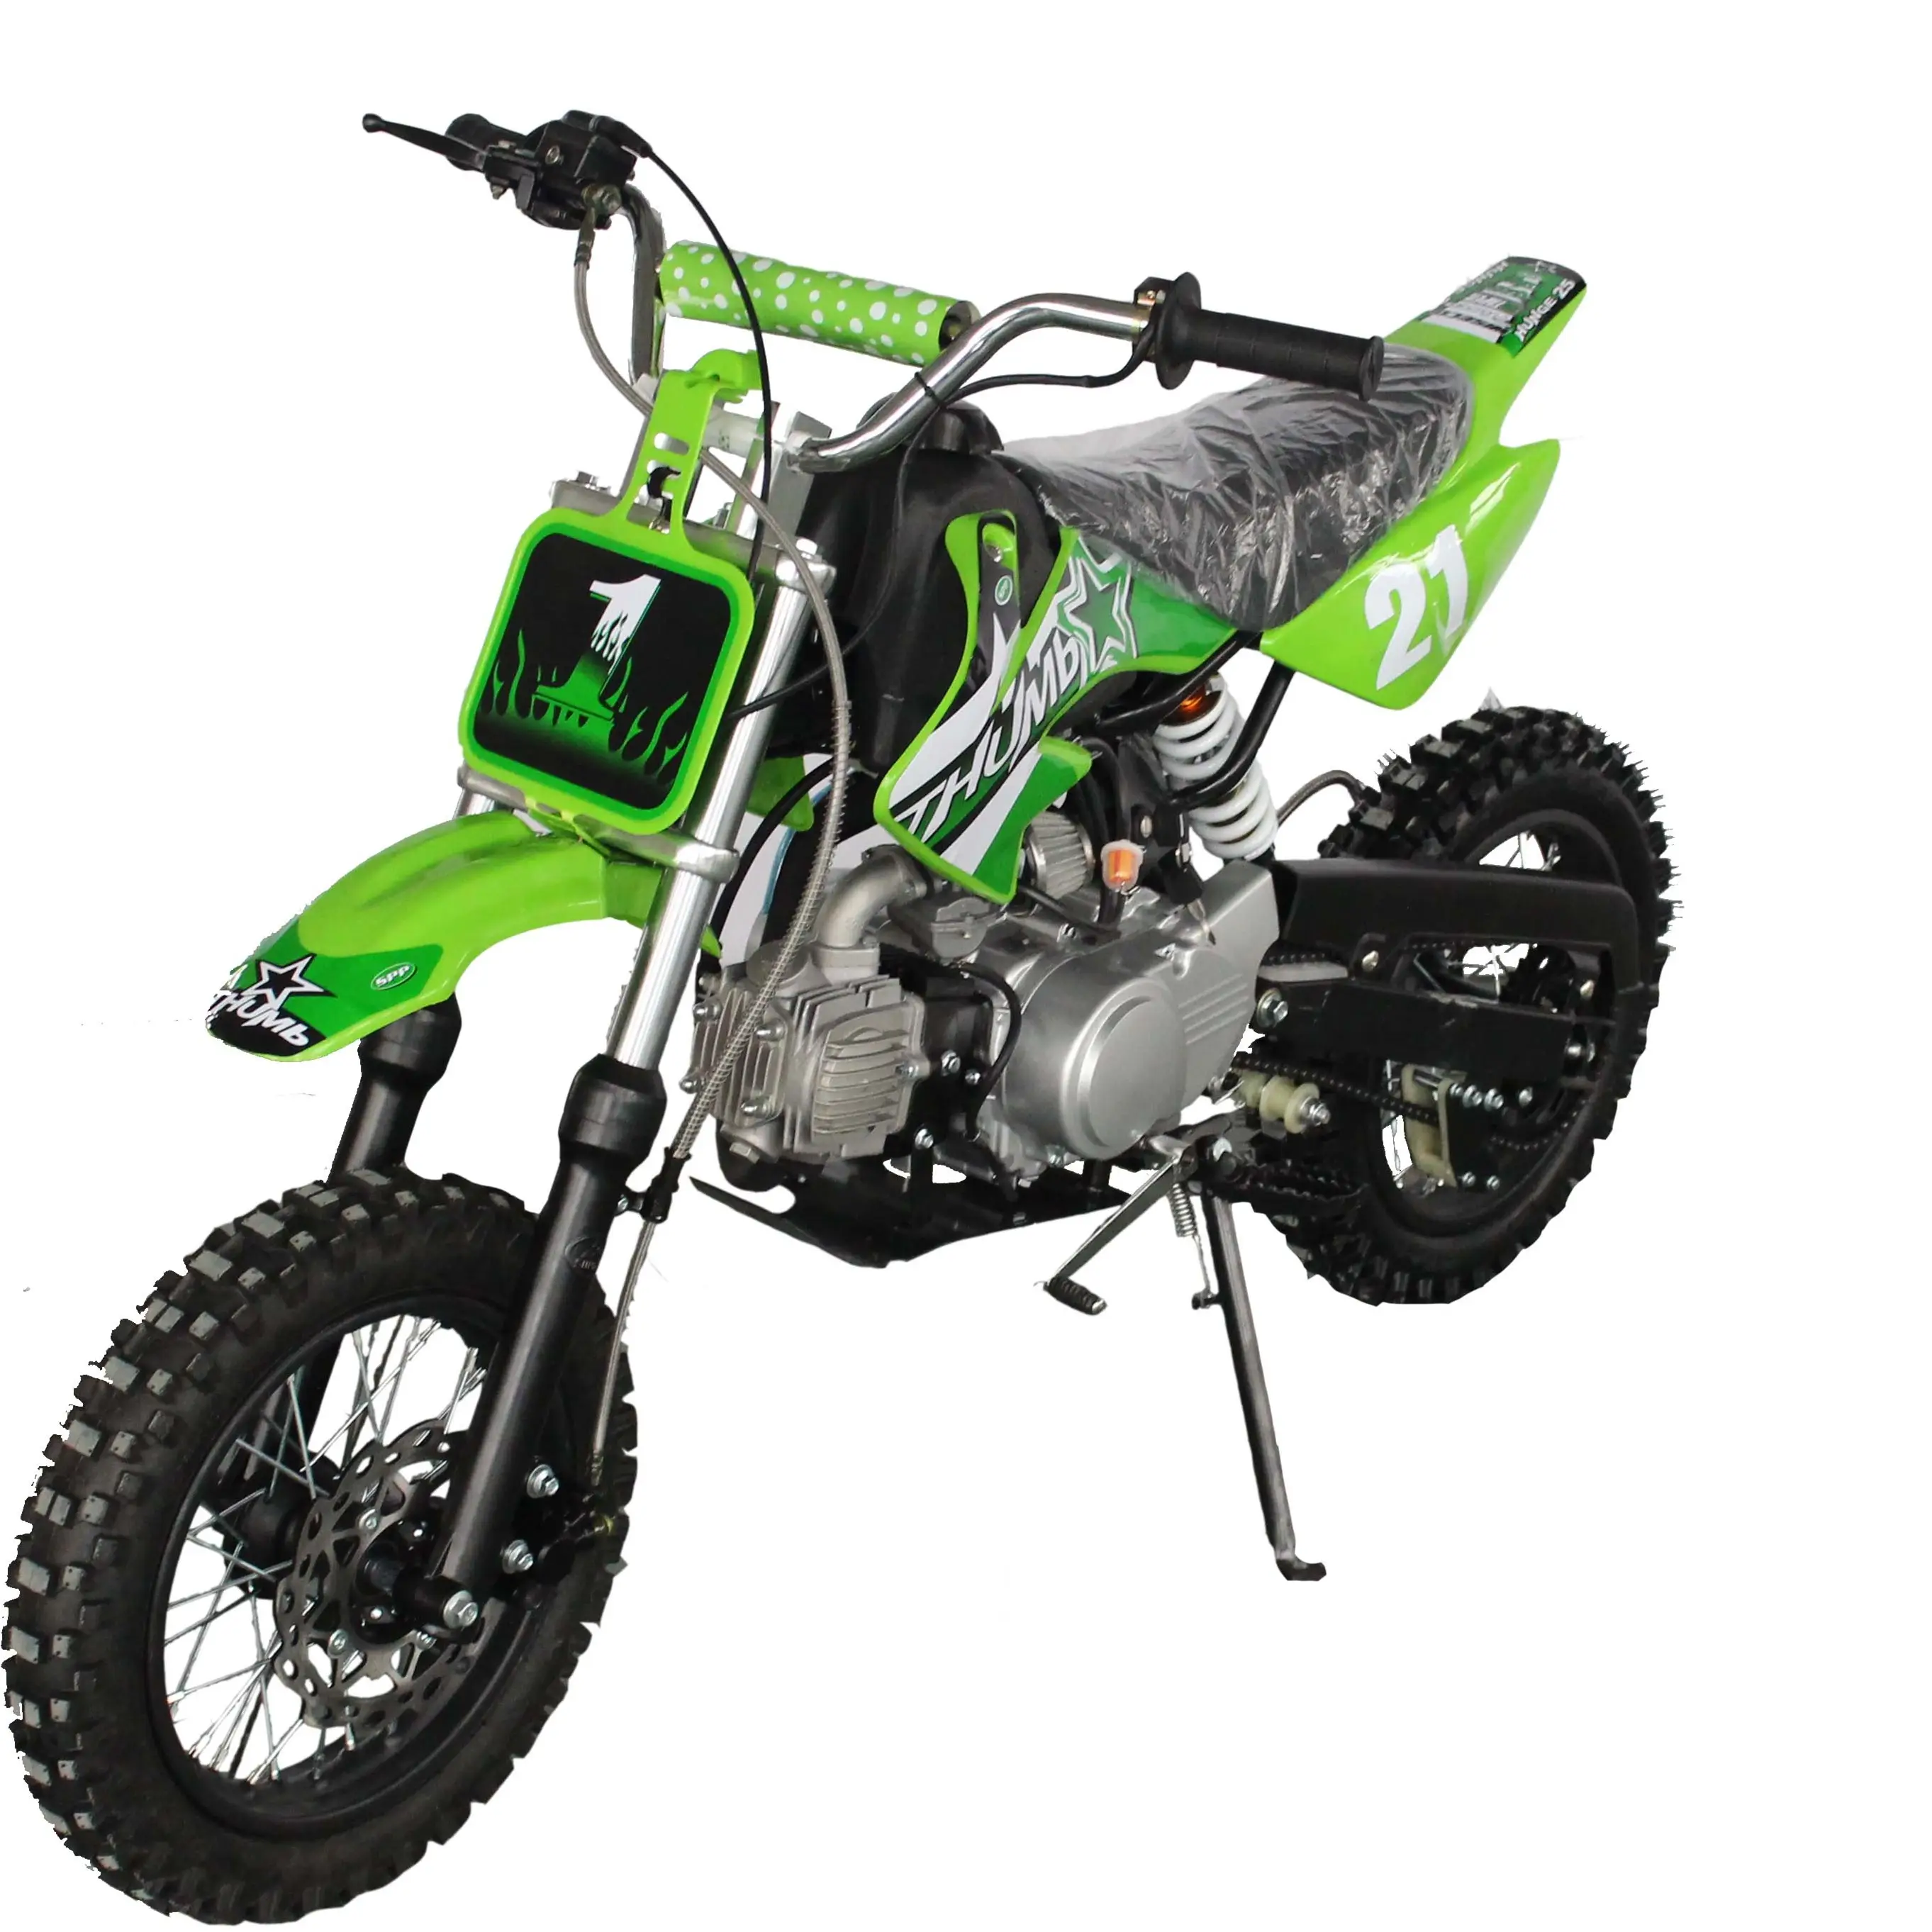 110cc-125cc automatische crossmotor voor volwassenen 1250cc dirt bike Cross-country motorfiets